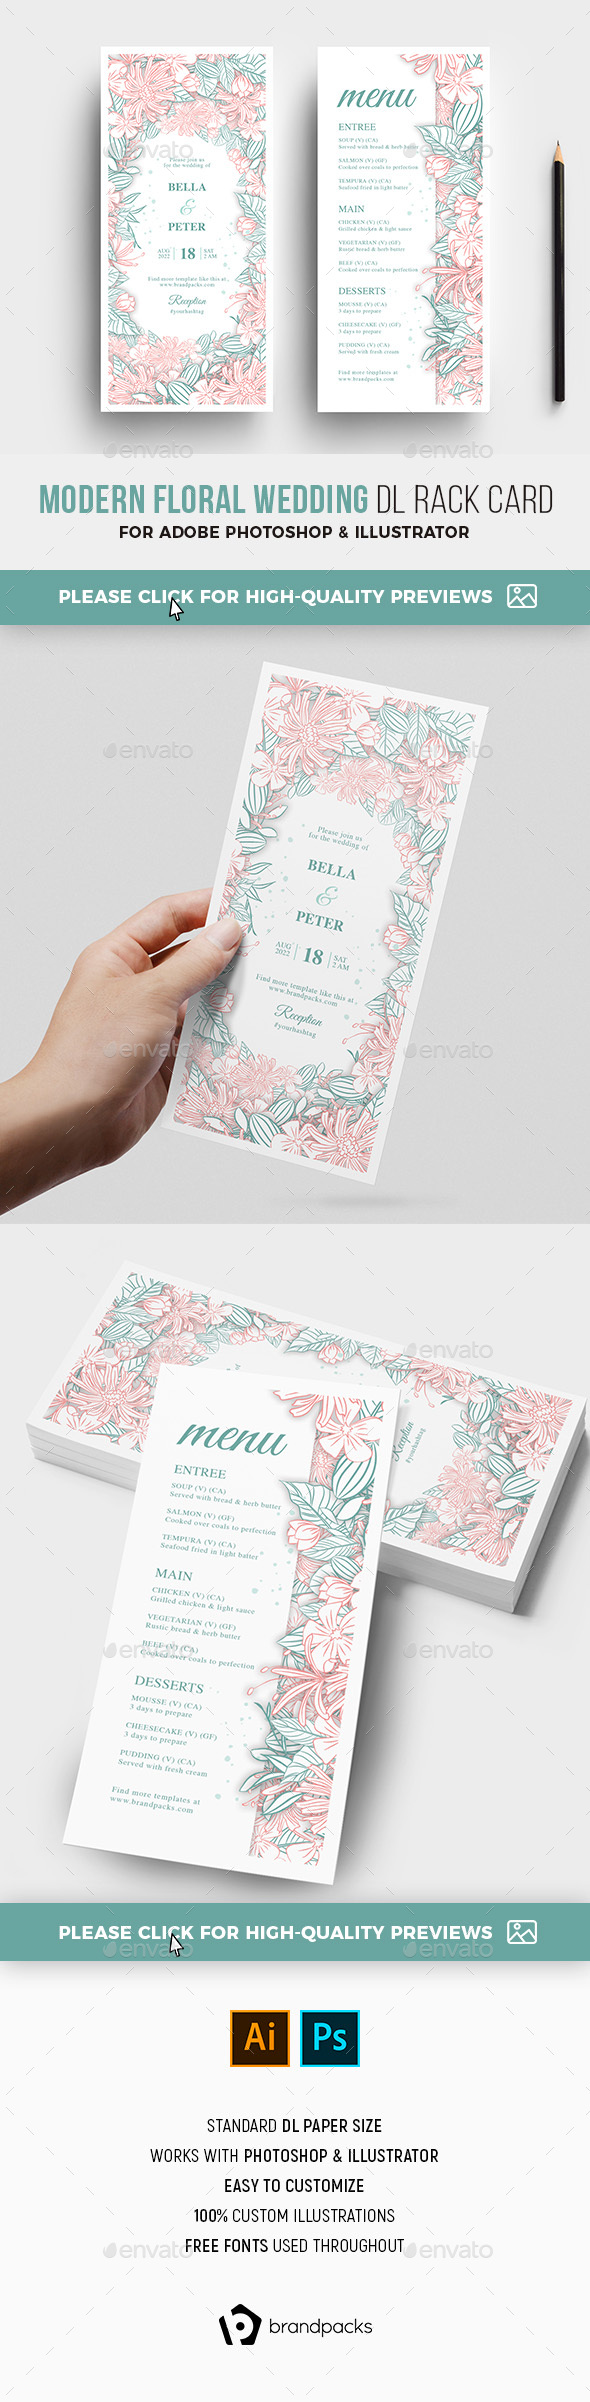 Modern Floral Wedding DL Card